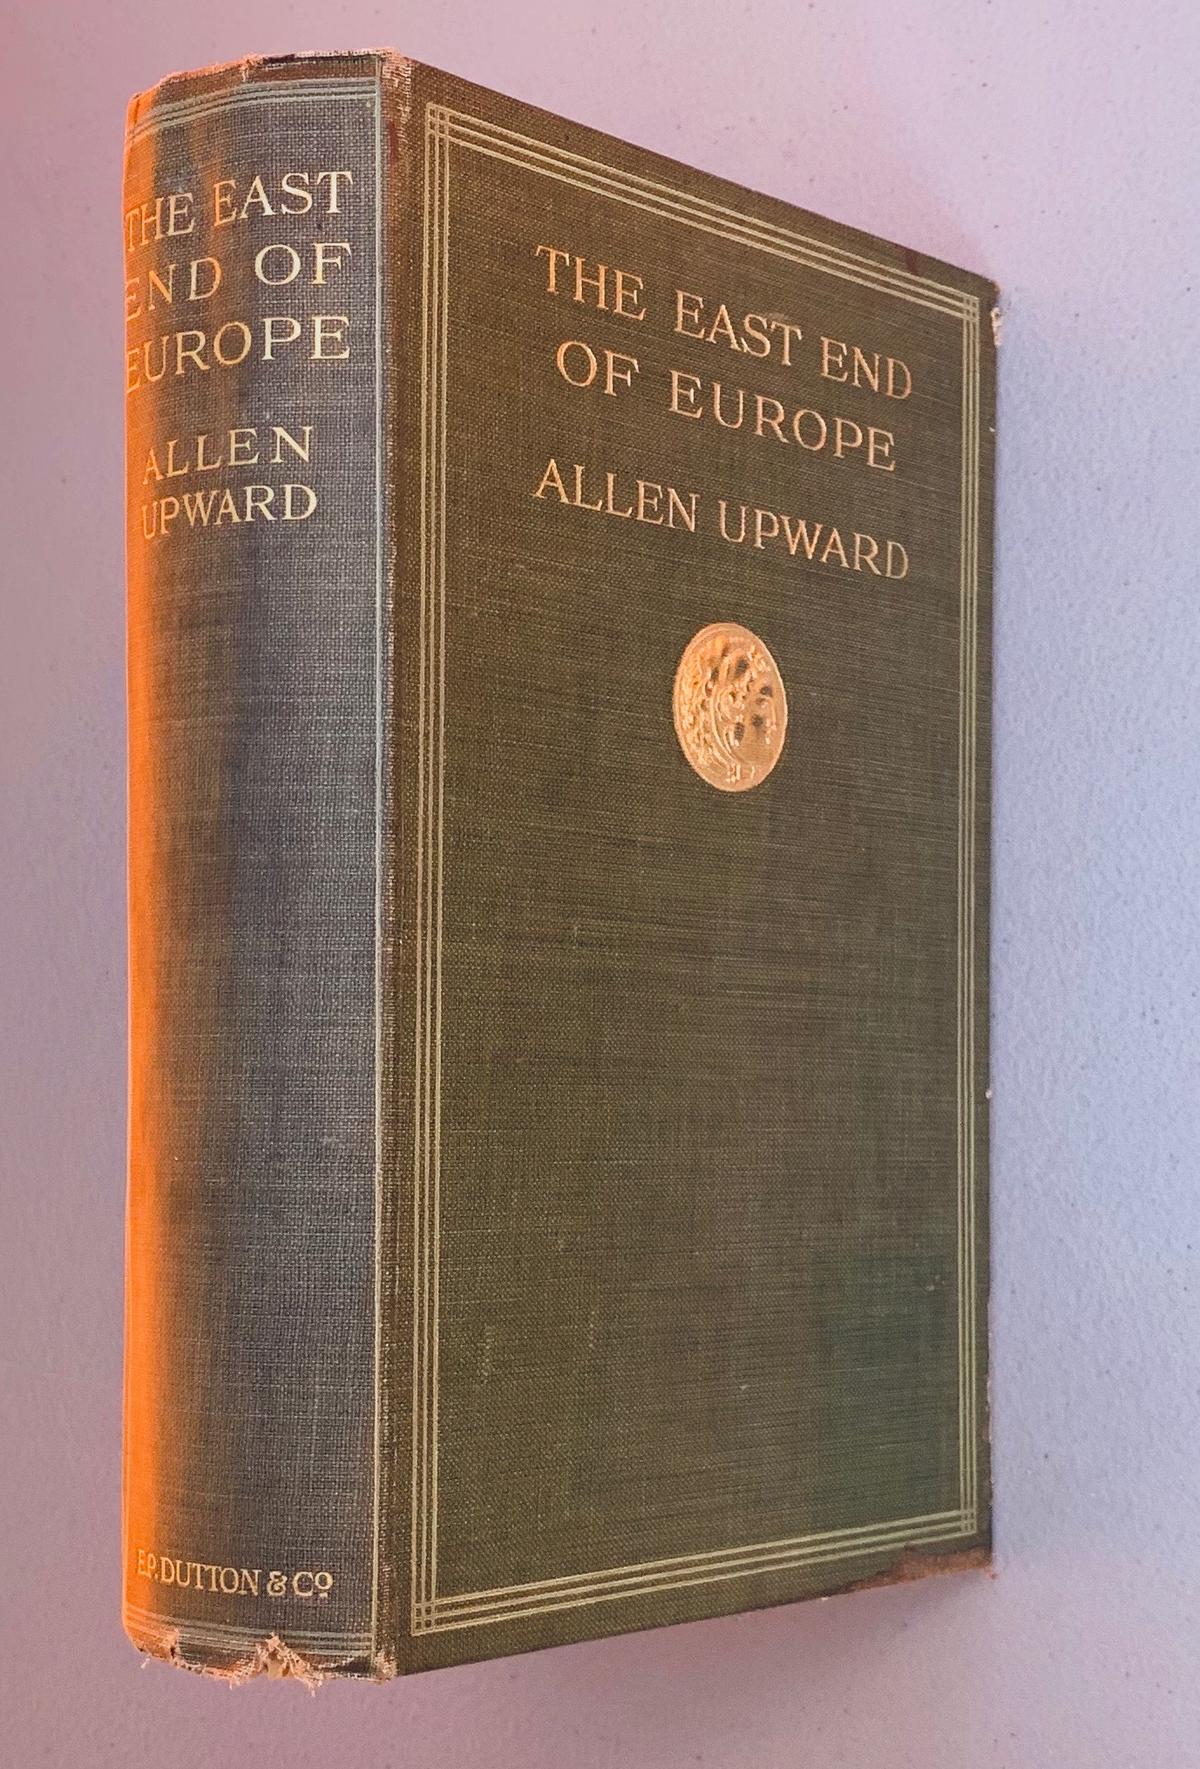 The East End of Europe by Allen Upward (1908) European Provinces of Turkey WW1